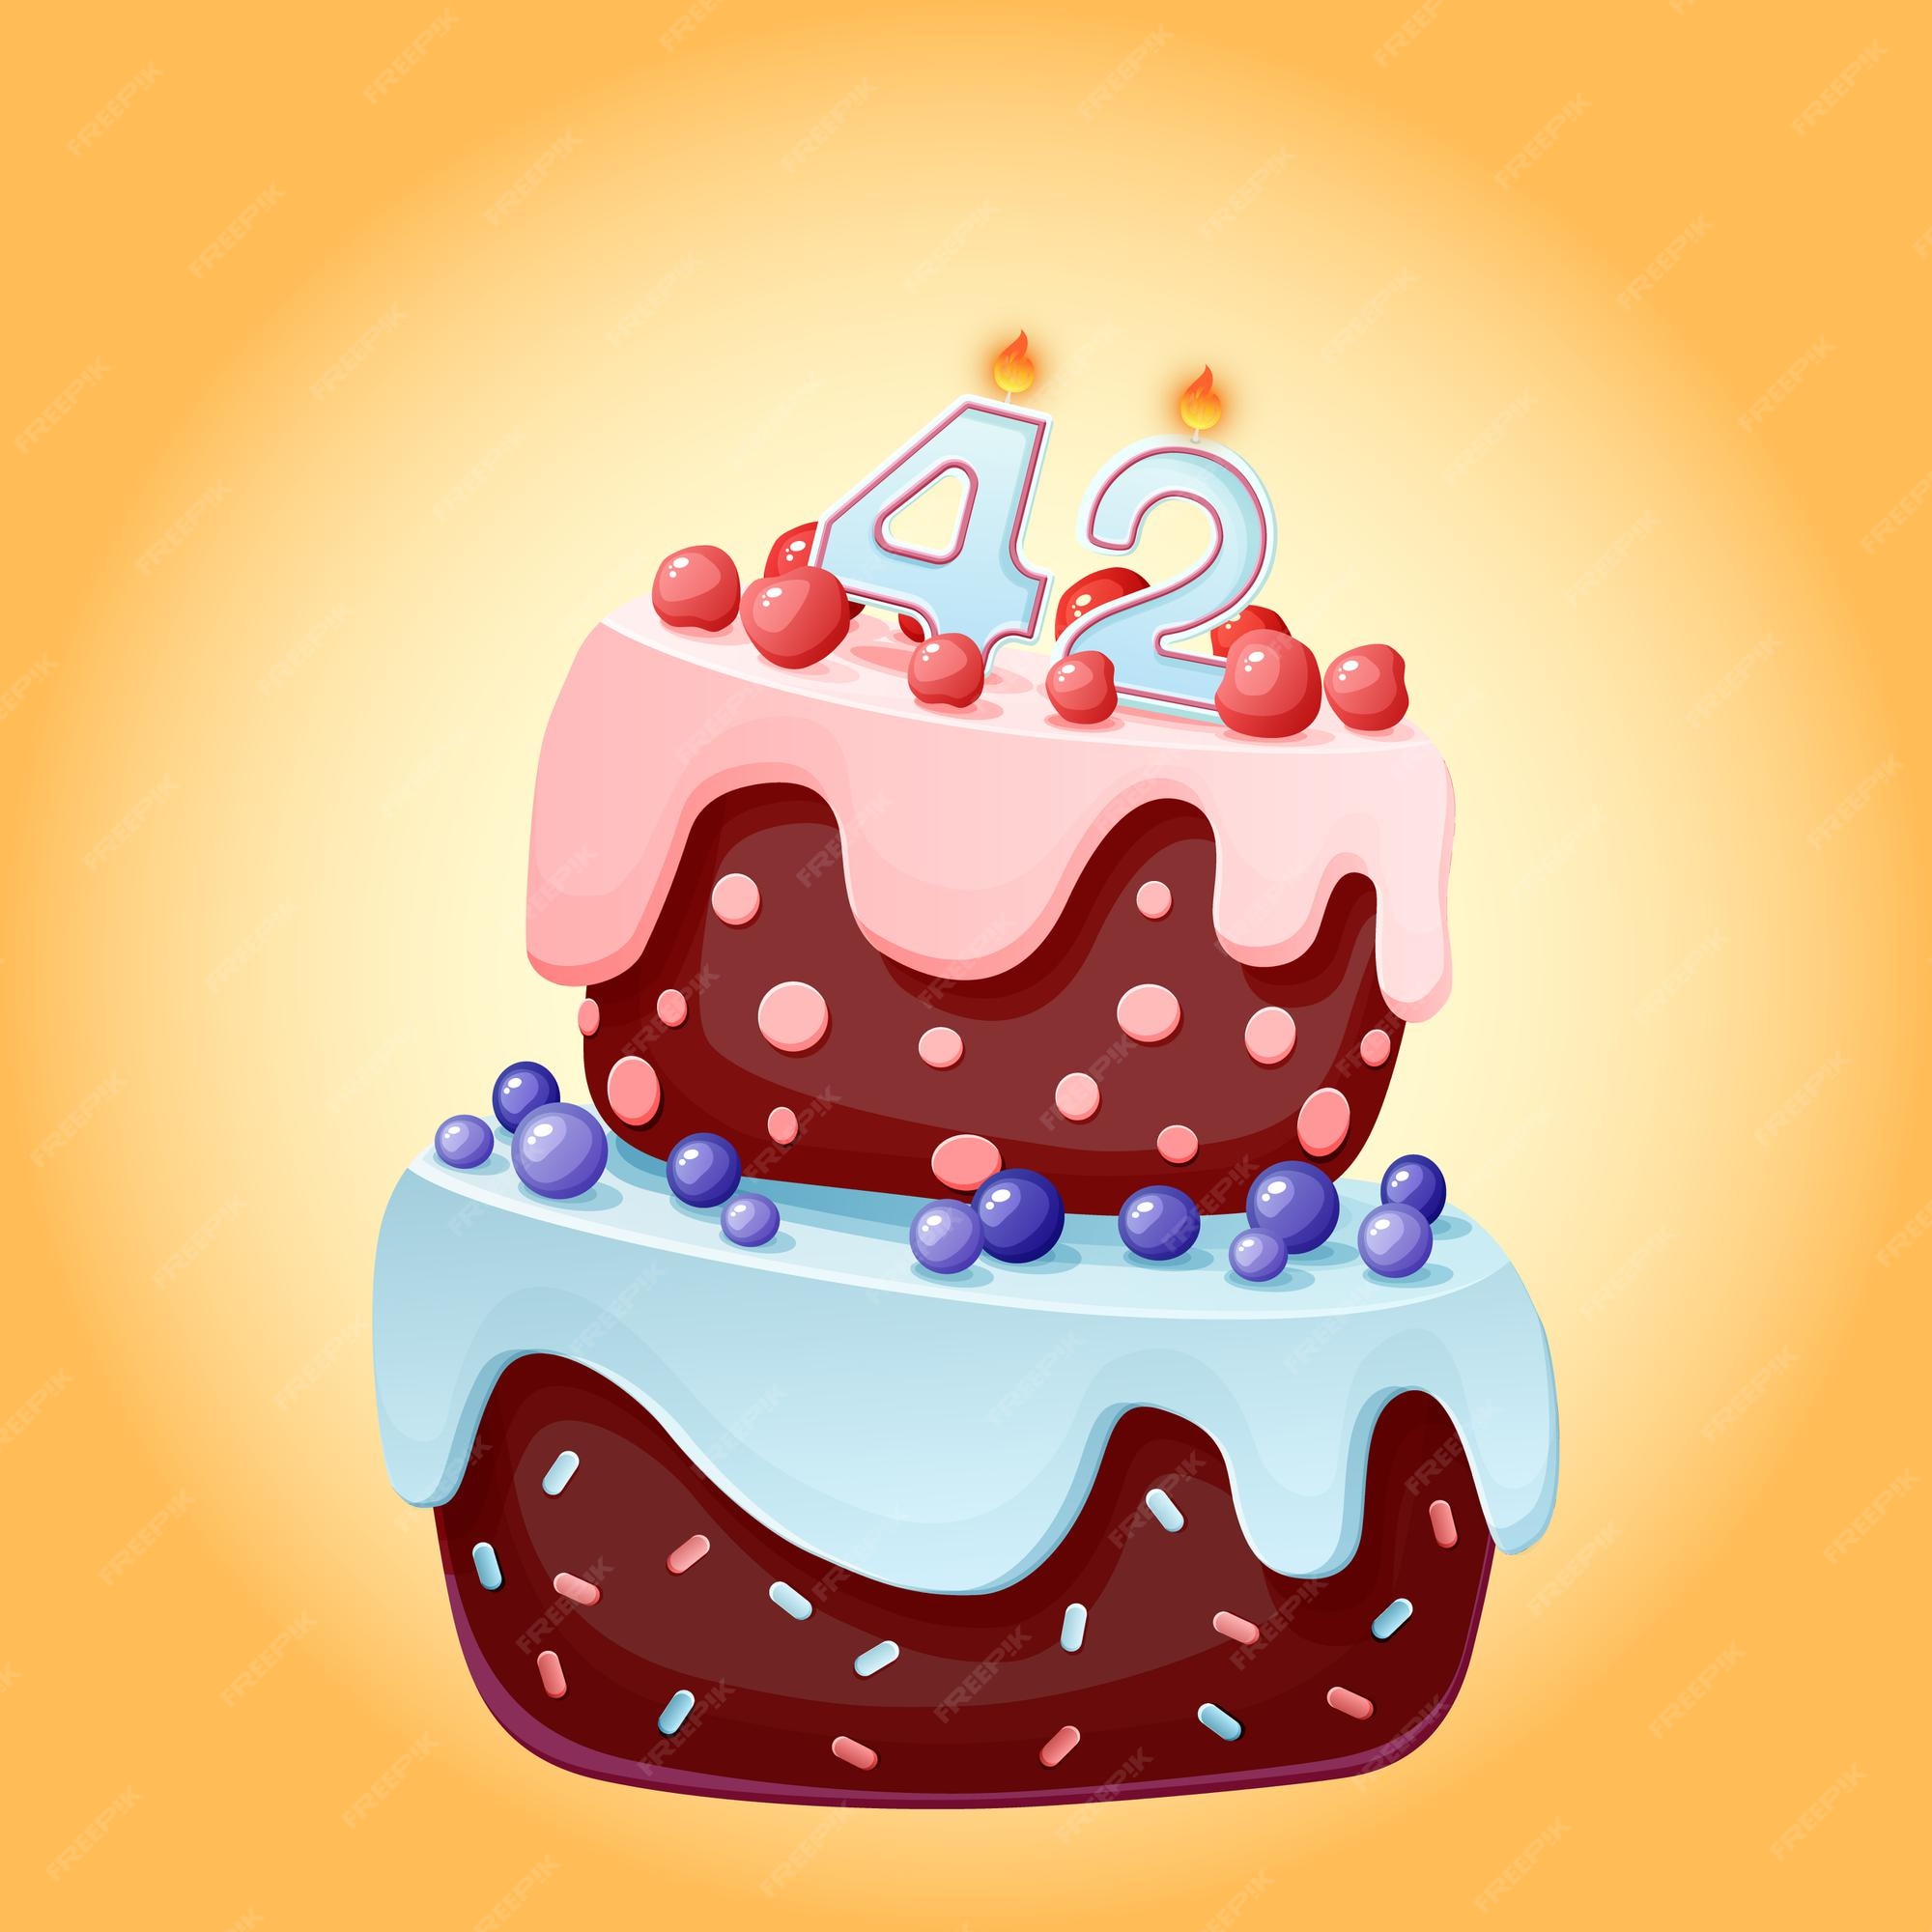 Torta de cumpleaños de cuarenta y dos años con velas número 42. imagen  vectorial festiva de dibujos animados lindo. galleta de chocolate con  frutos rojos, cerezas y arándanos. ilustración de feliz cumpleaños